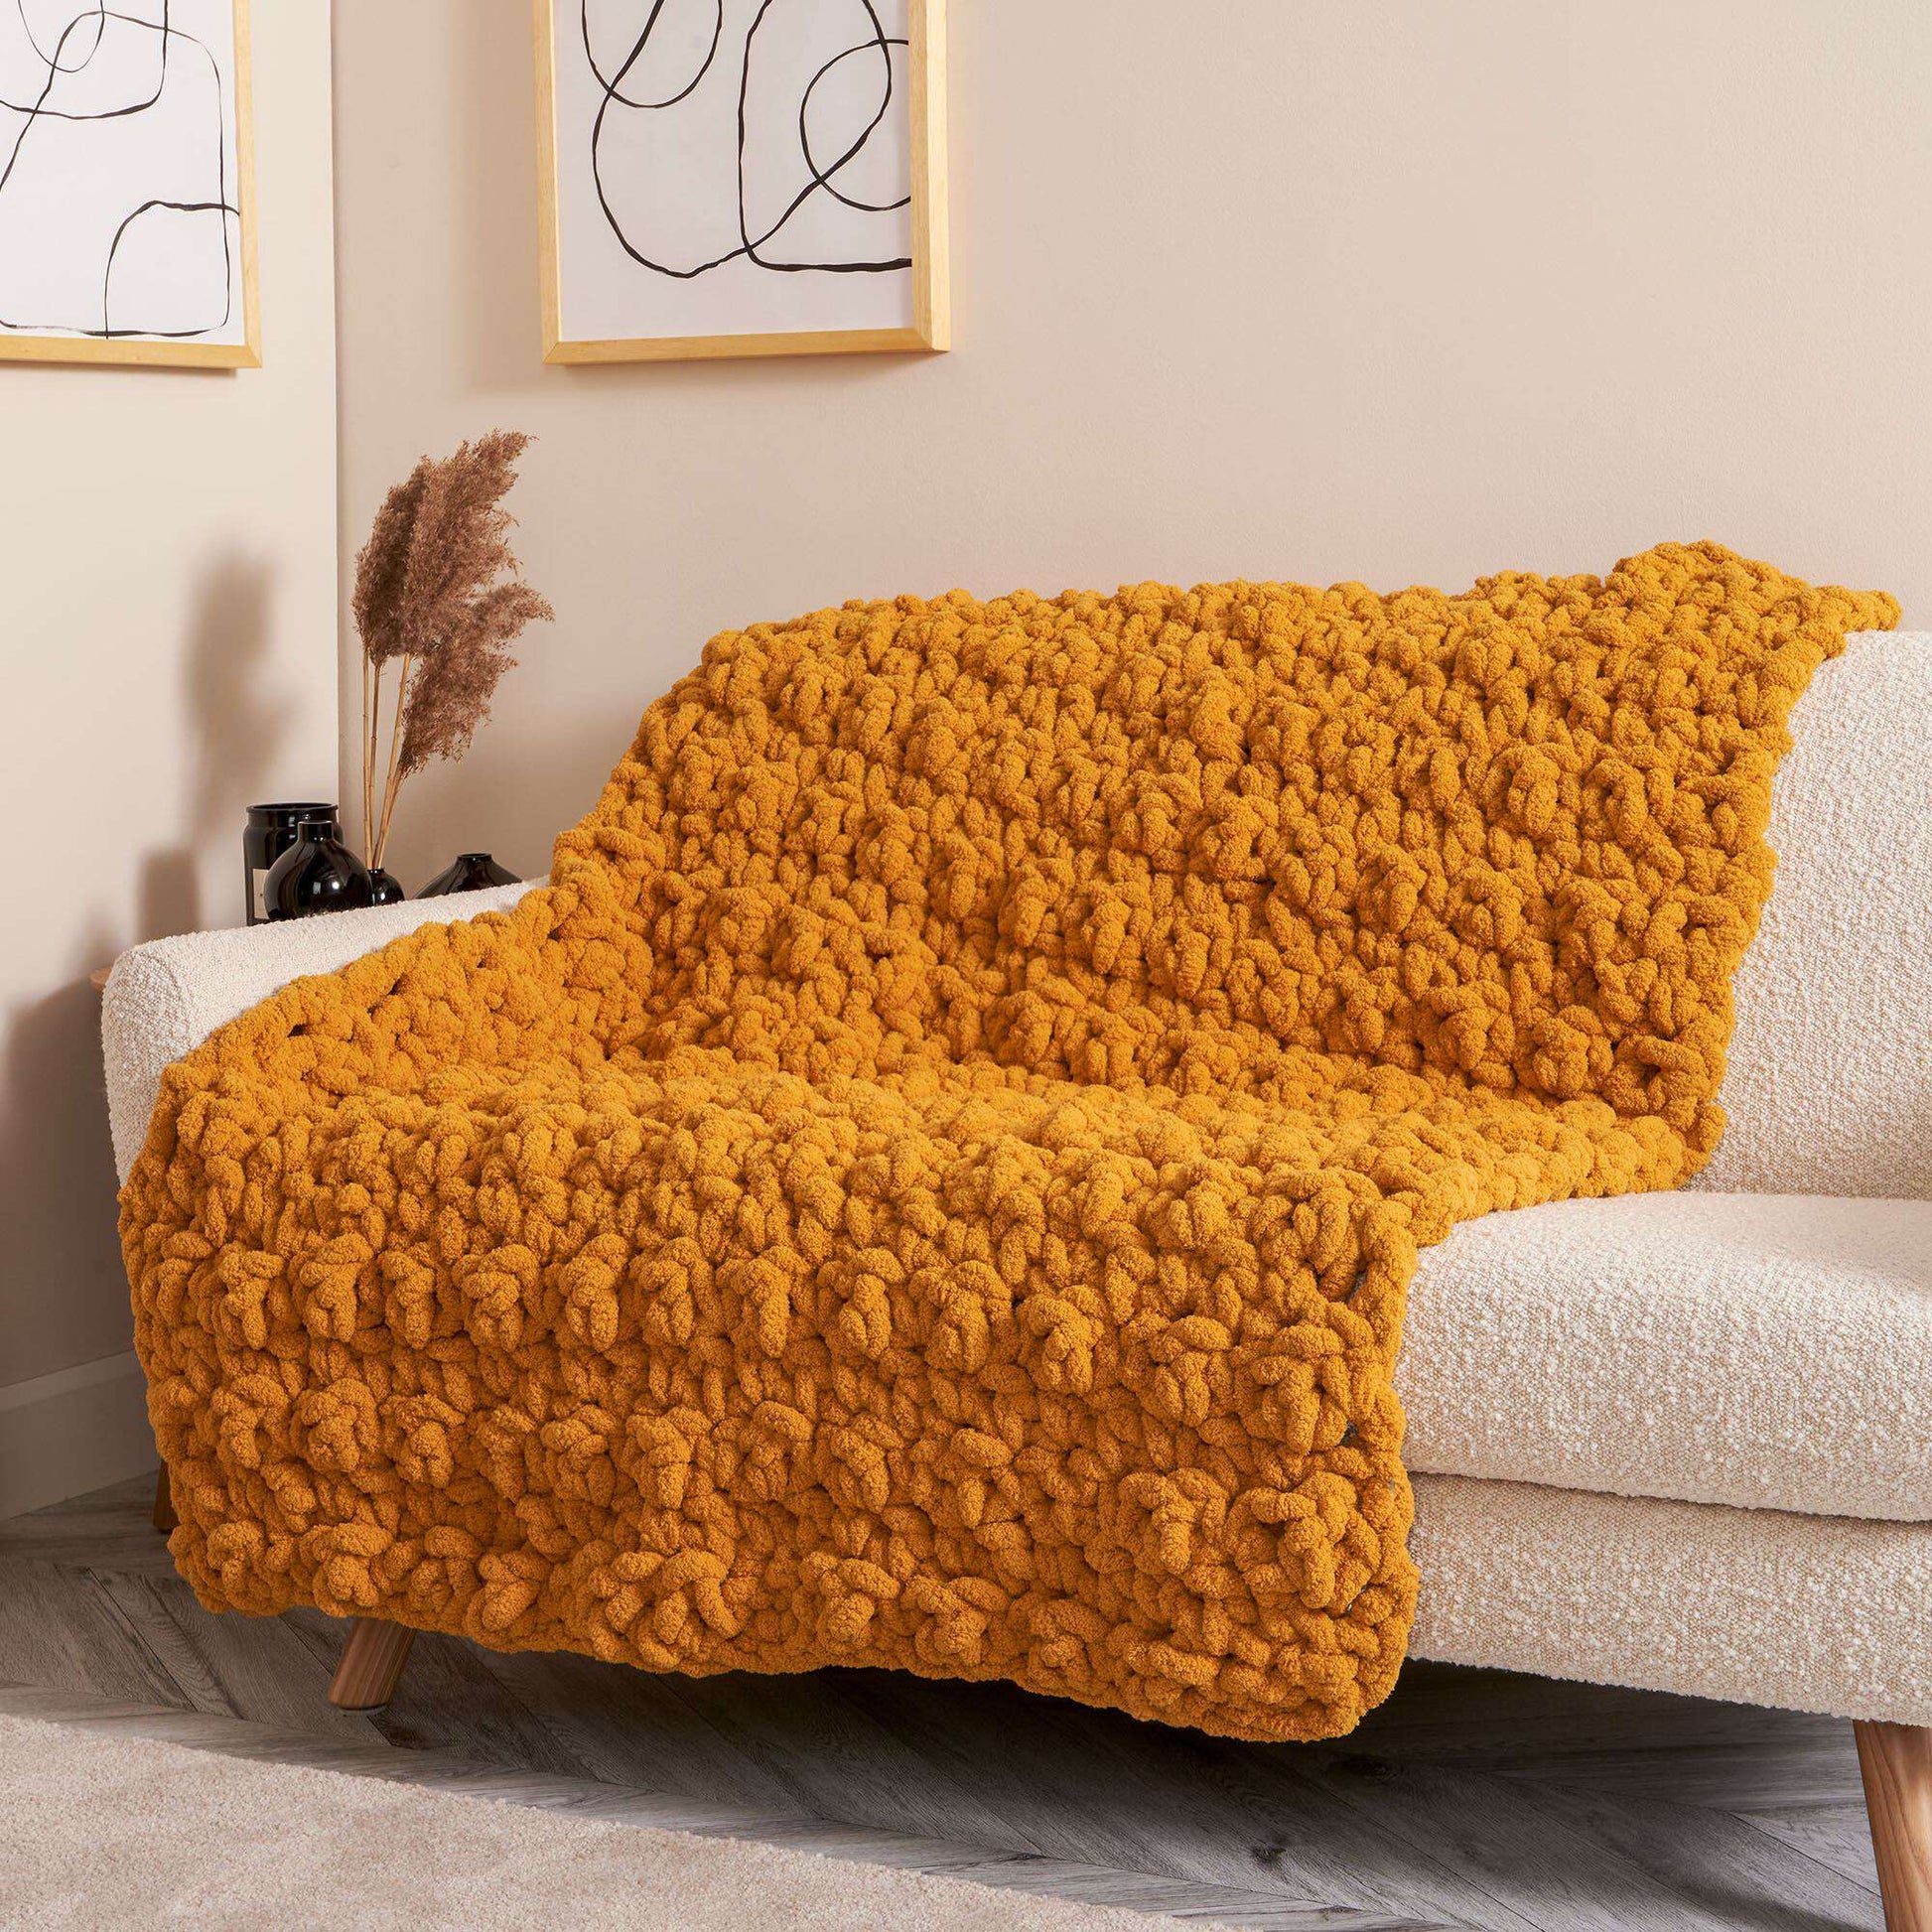 Free Bernat Lemon Peel Stitch Crochet Blanket Pattern